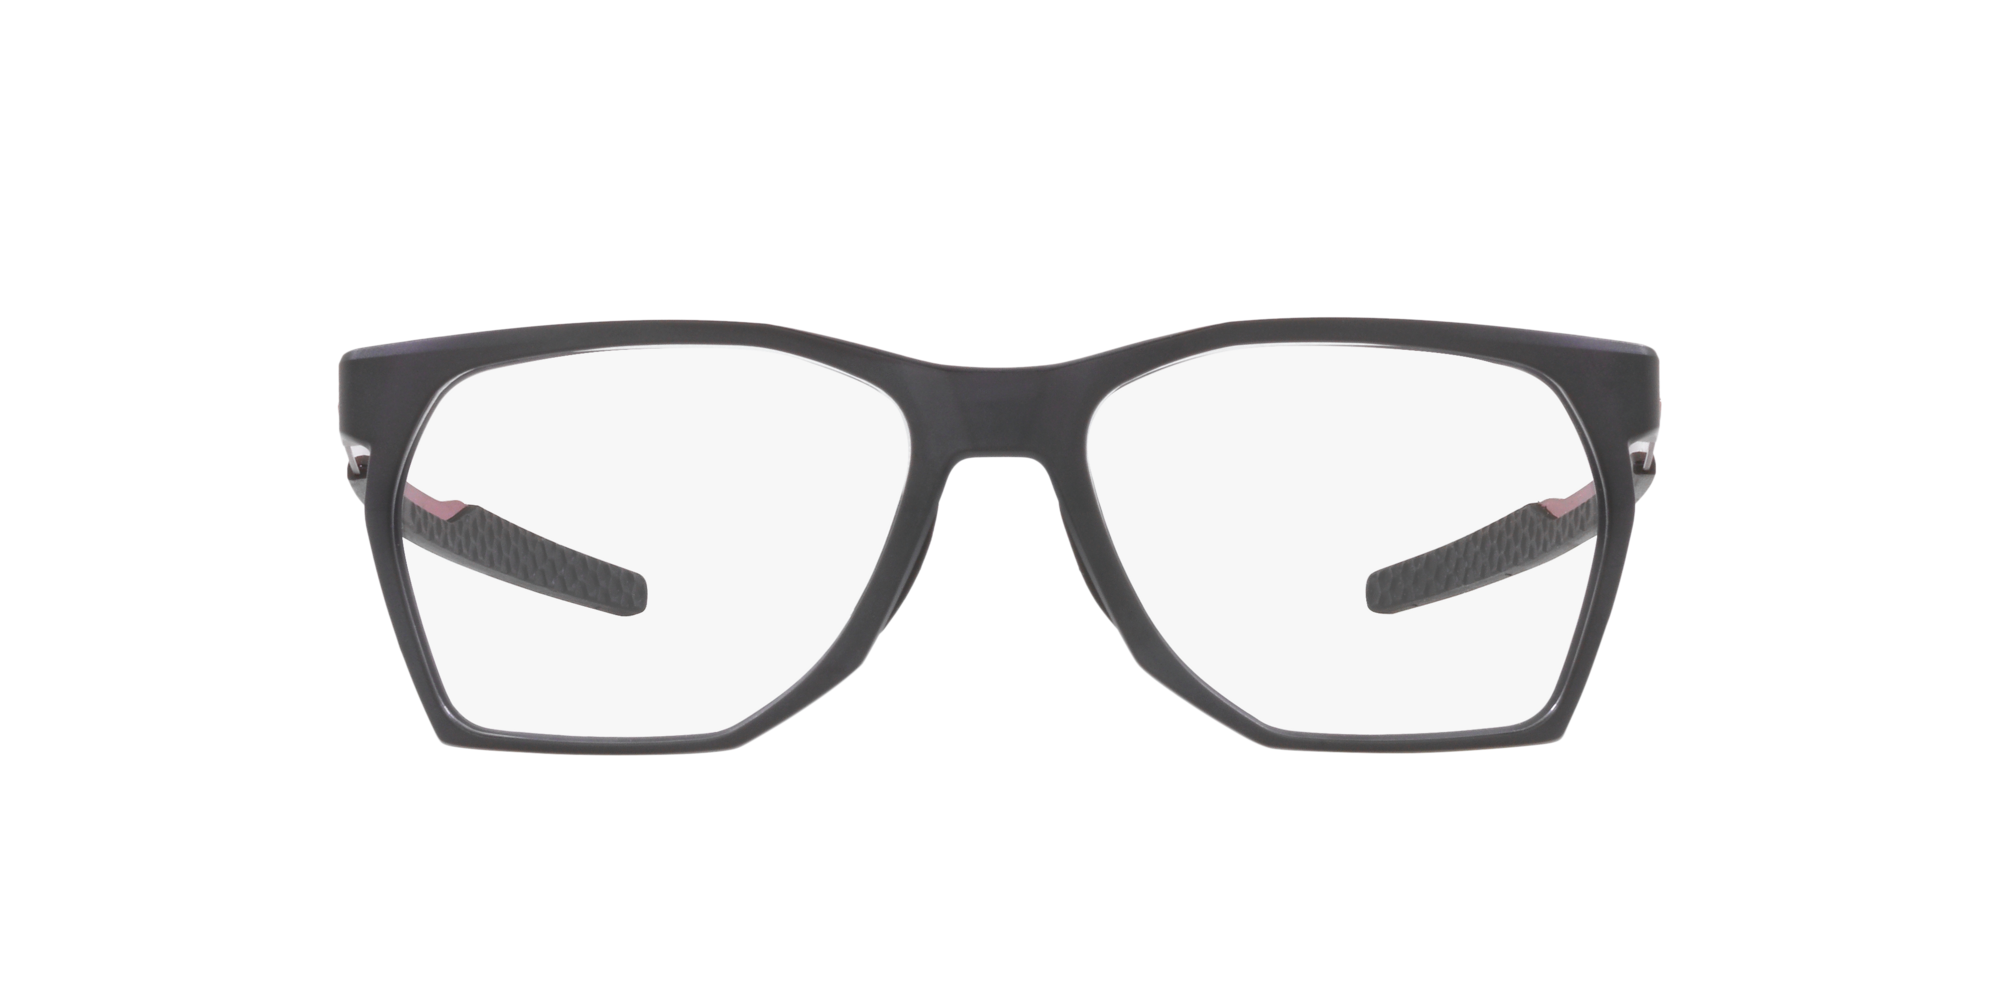 Das Bild zeigt die Korrektionsbrille OX8059 805902  von der Marke Oakley  in  grau rauch satiniert.